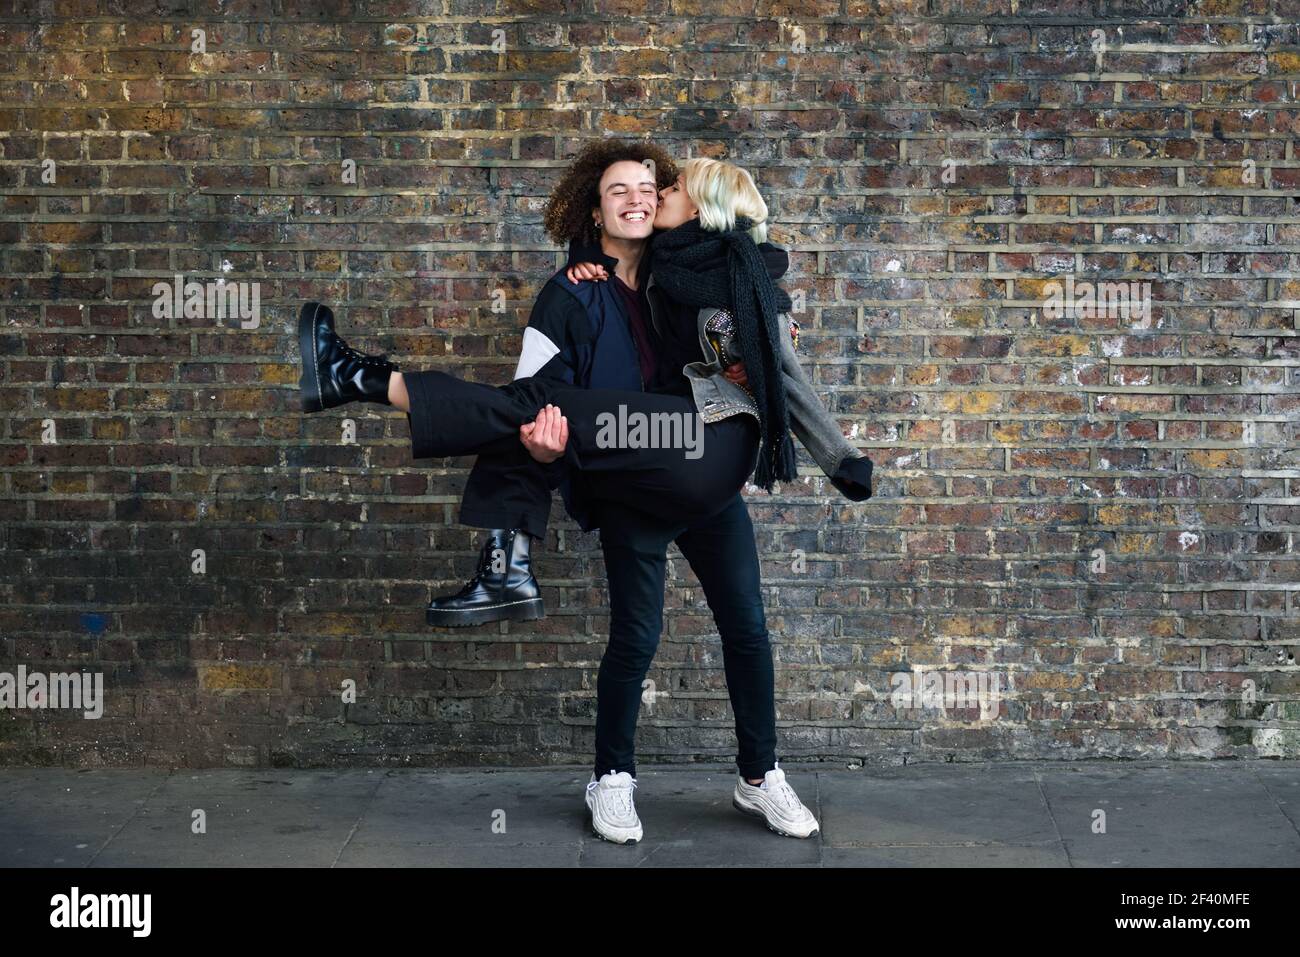 Homme tenant sa petite amie dans ses bras. Jeune couple appréciant la ville de Camden en face d'un mur de briques typique de Londres, Royaume-Uni. Homme tenant sa petite amie dans ses bras devant un mur de briques typique de Londres Banque D'Images